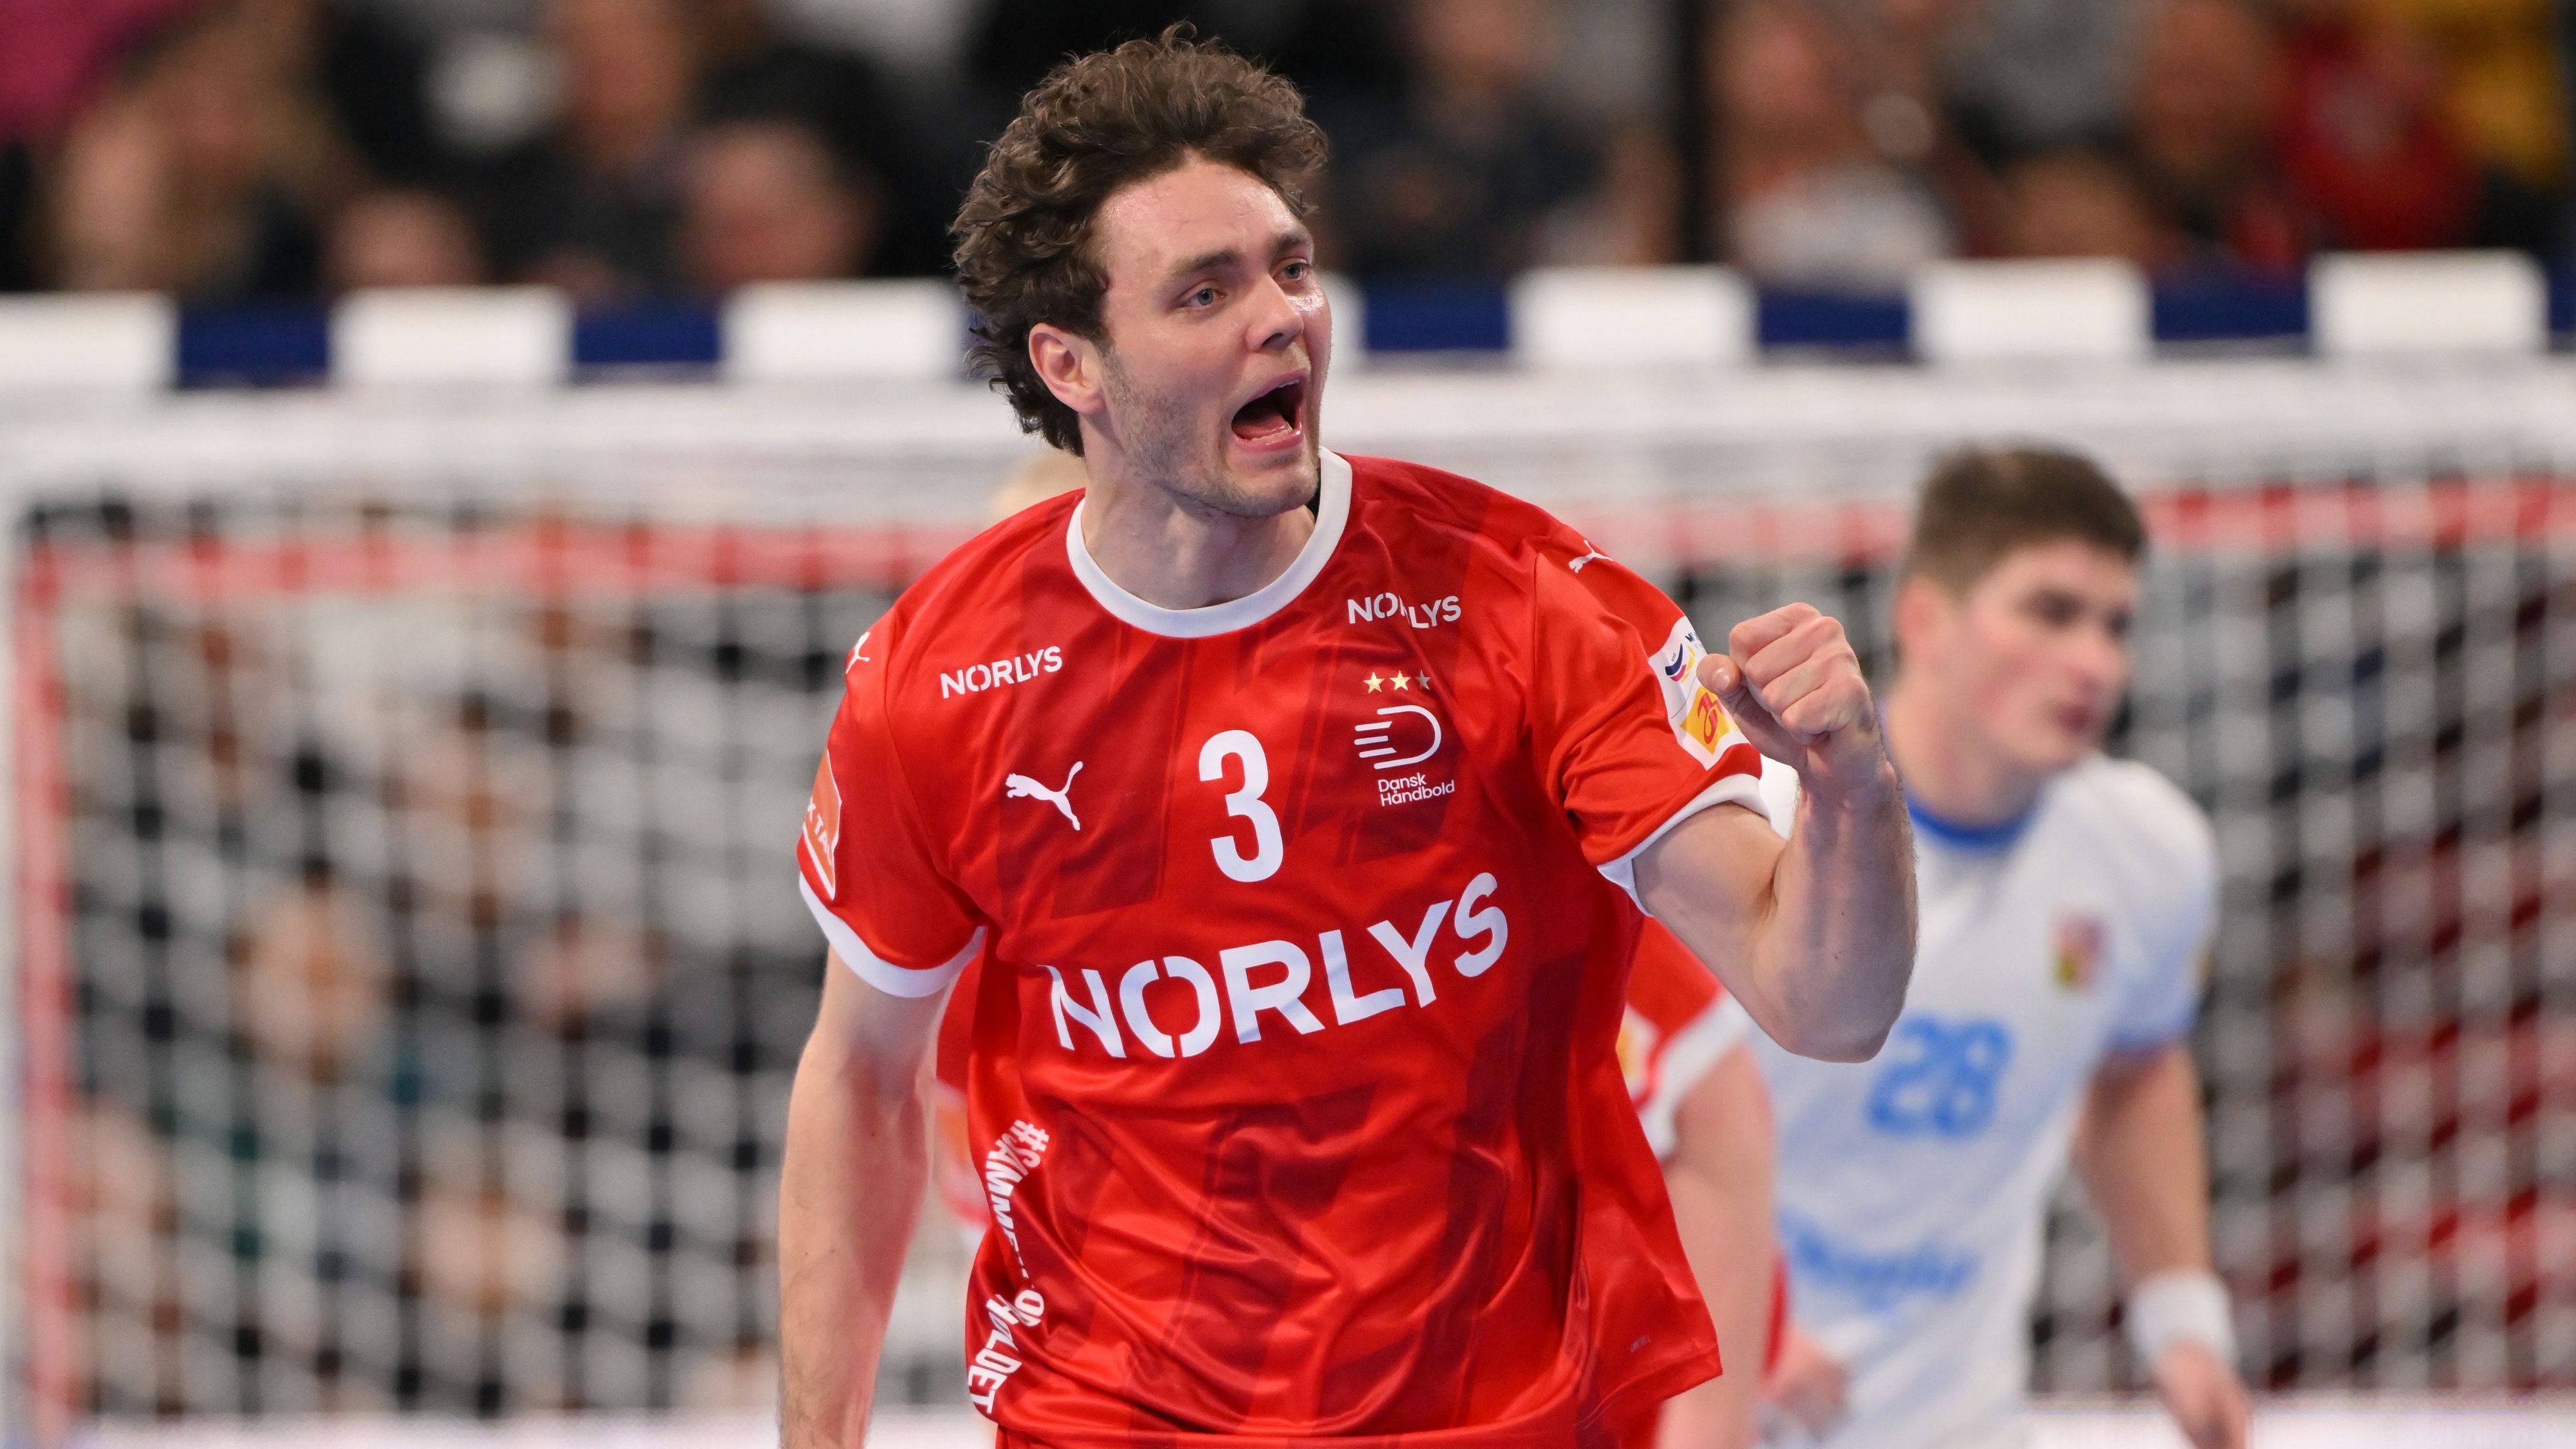 <strong>Dänemark bei der Handball-EM: Nur ein echter Gegner<br></strong>Und der Top-Favorit wurde den Vorschusslorbeeren mehr als gerecht. Dänemark dominierte alle Gegner in der Vorrunde (Tschechien, Portugal, Griechenland) nach Belieben, ehe zum Hauptrundenauftakt Titelverteidiger Schweden wartete.